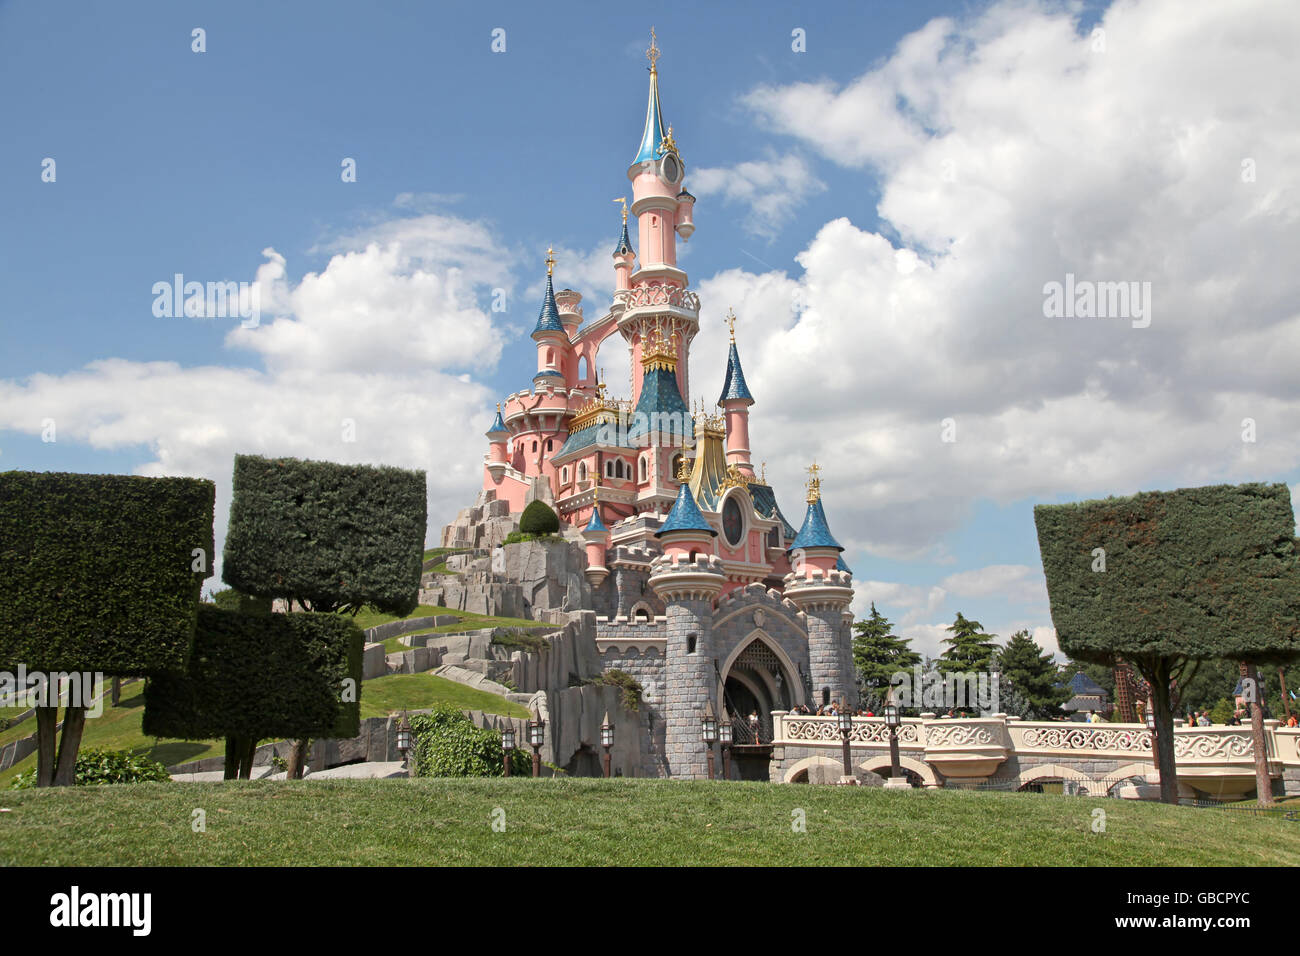 Marne La Vallee, Francia. El 1ro de julio de 2011. El castillo de Disneyland Paris recién pintadas. Lucy Clark/Alamy Live News Foto de stock